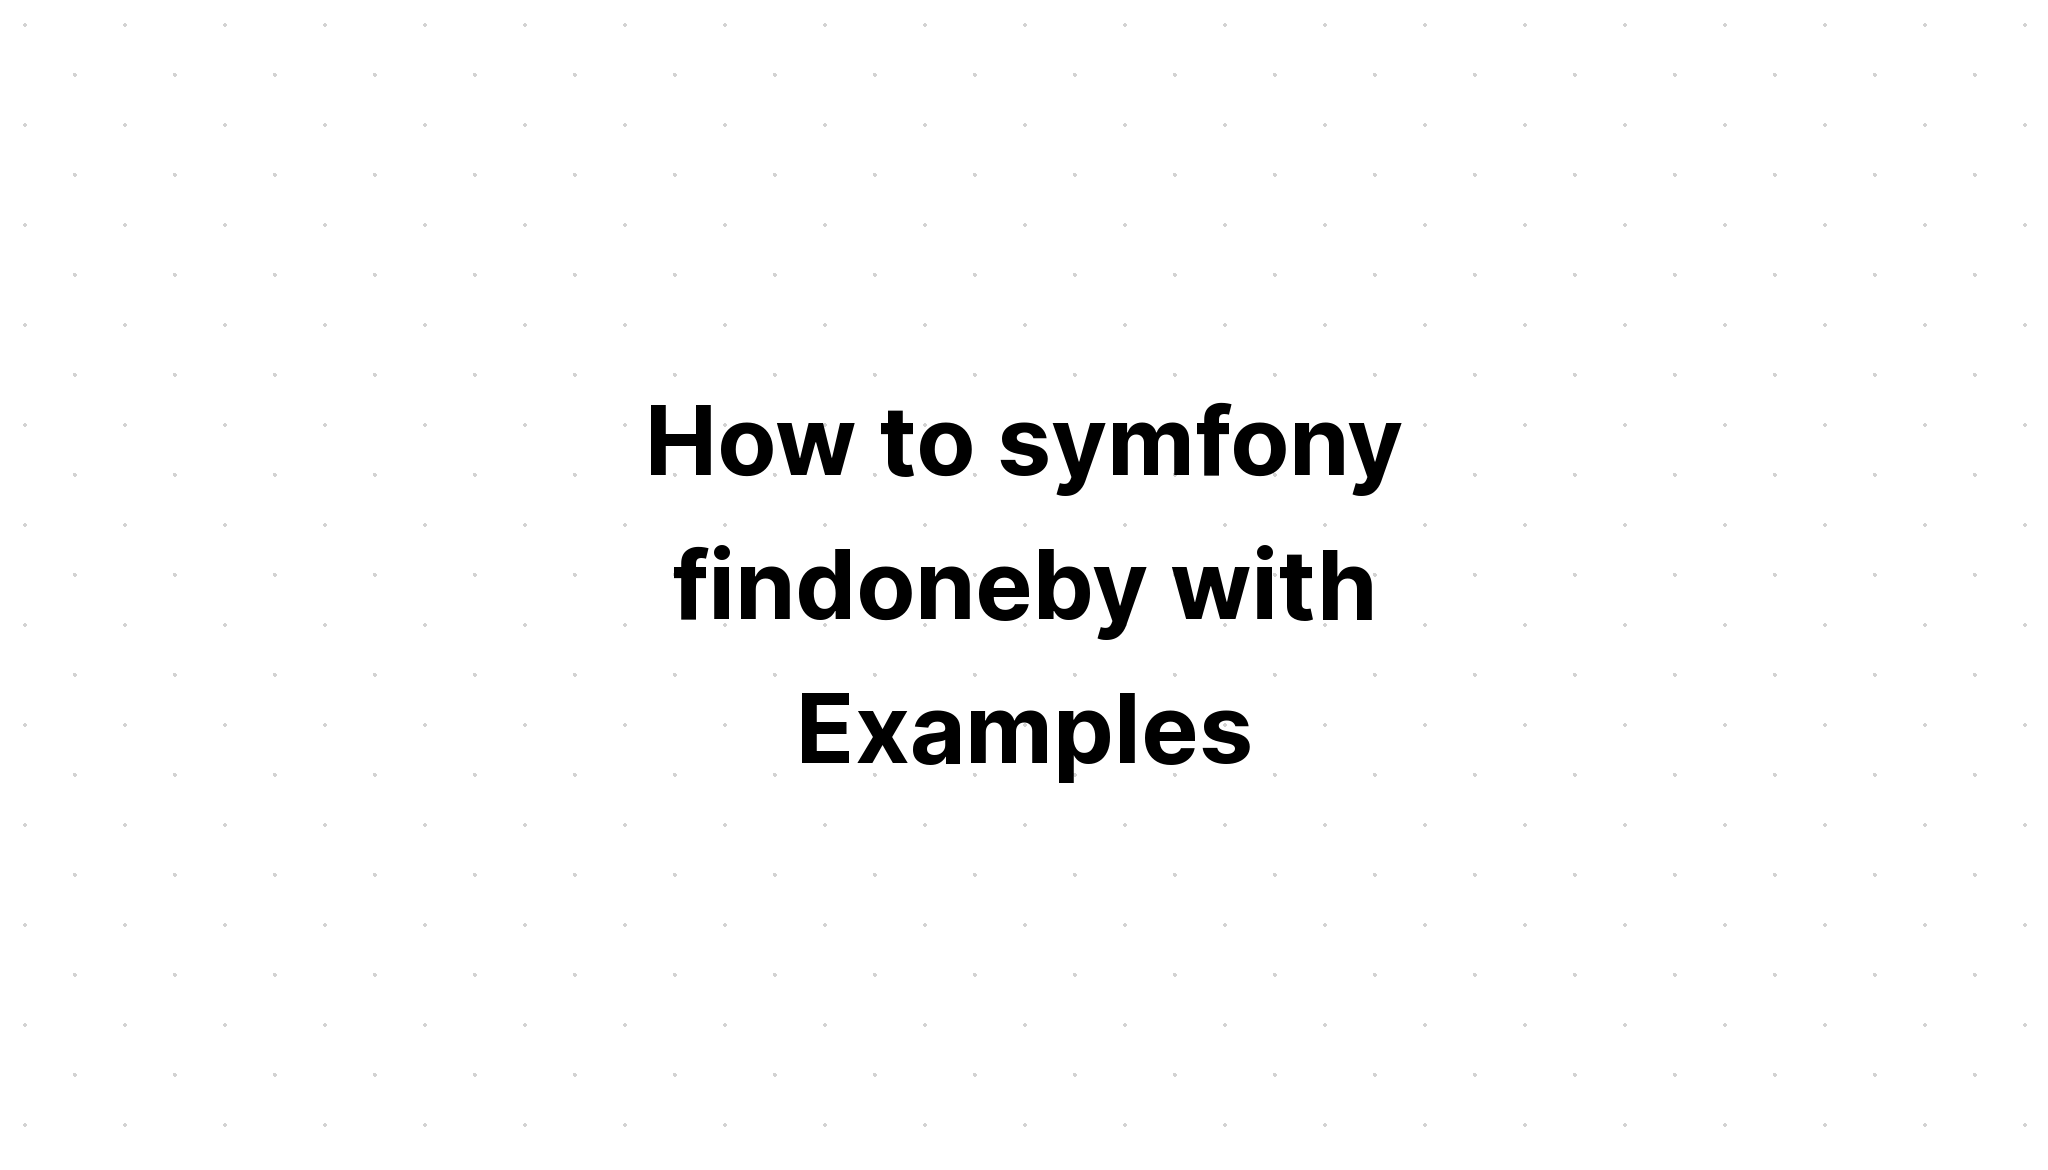 Cách sử dụng symfony findoneby với các ví dụ